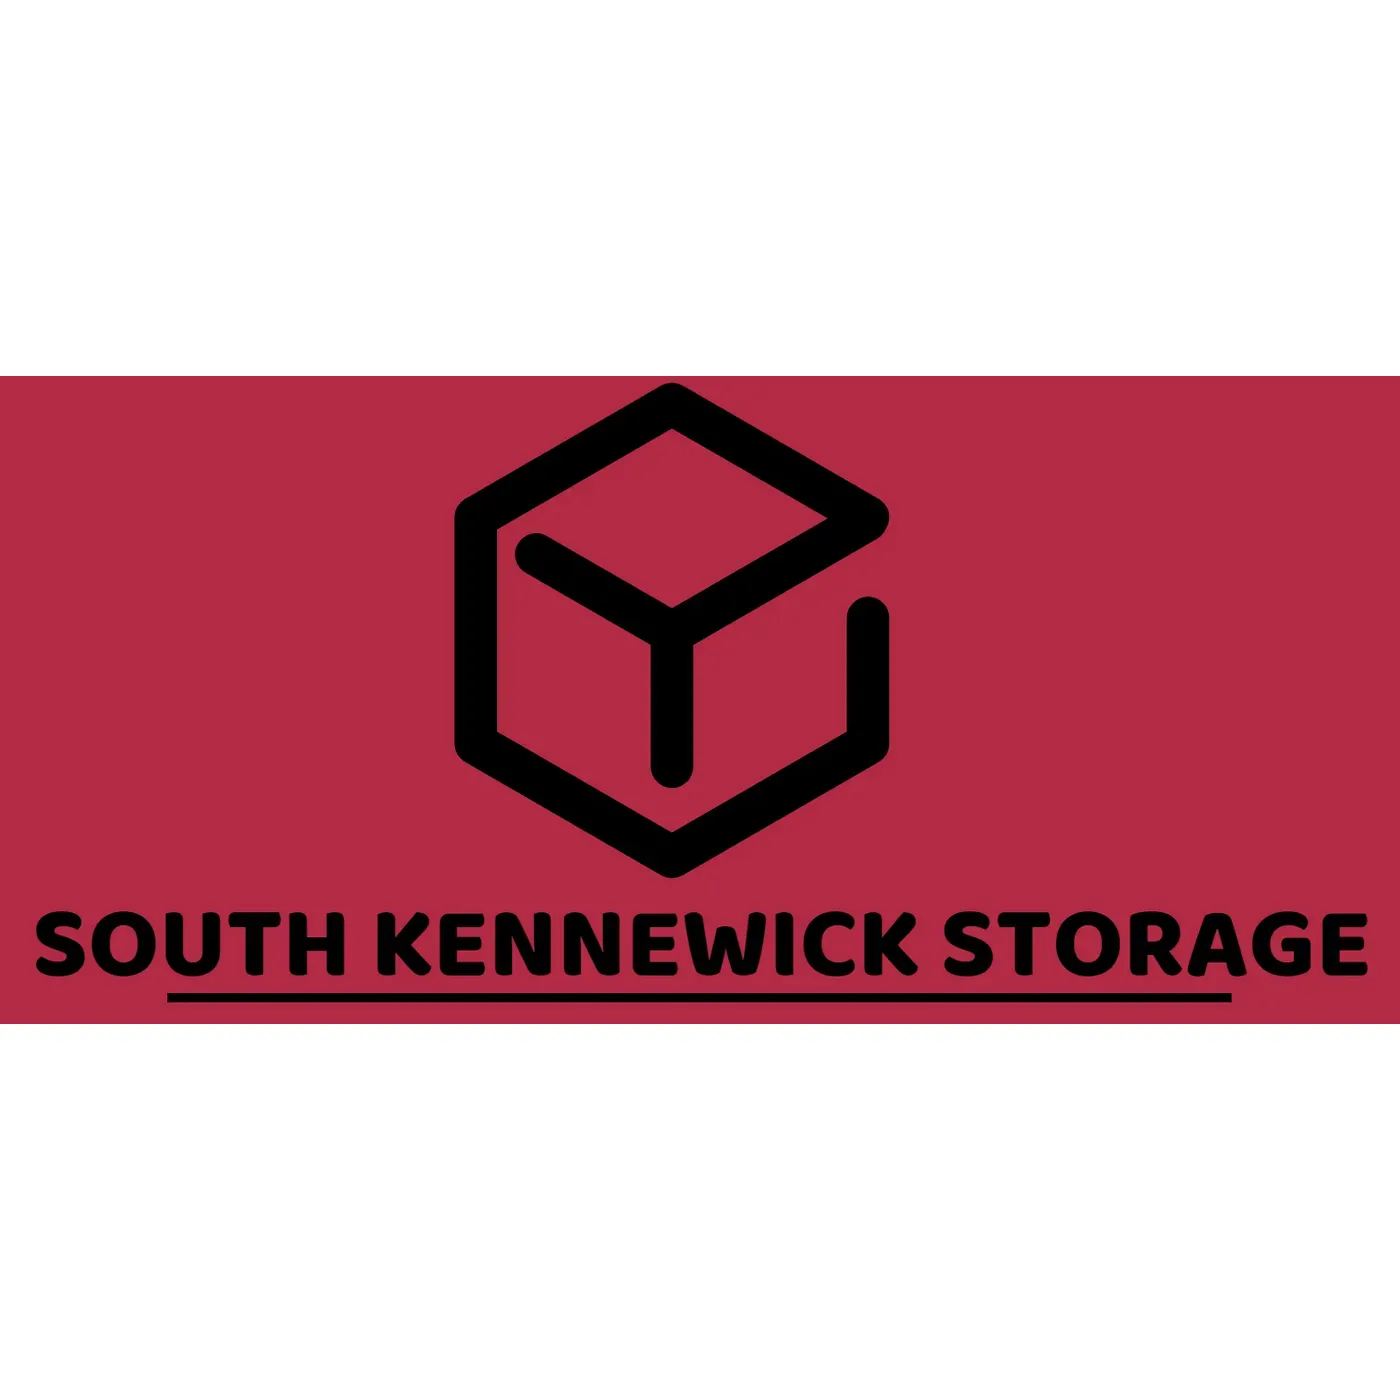 South Kennewick Storage - Kennewick, WA 99338 - (509)785-7316 | ShowMeLocal.com